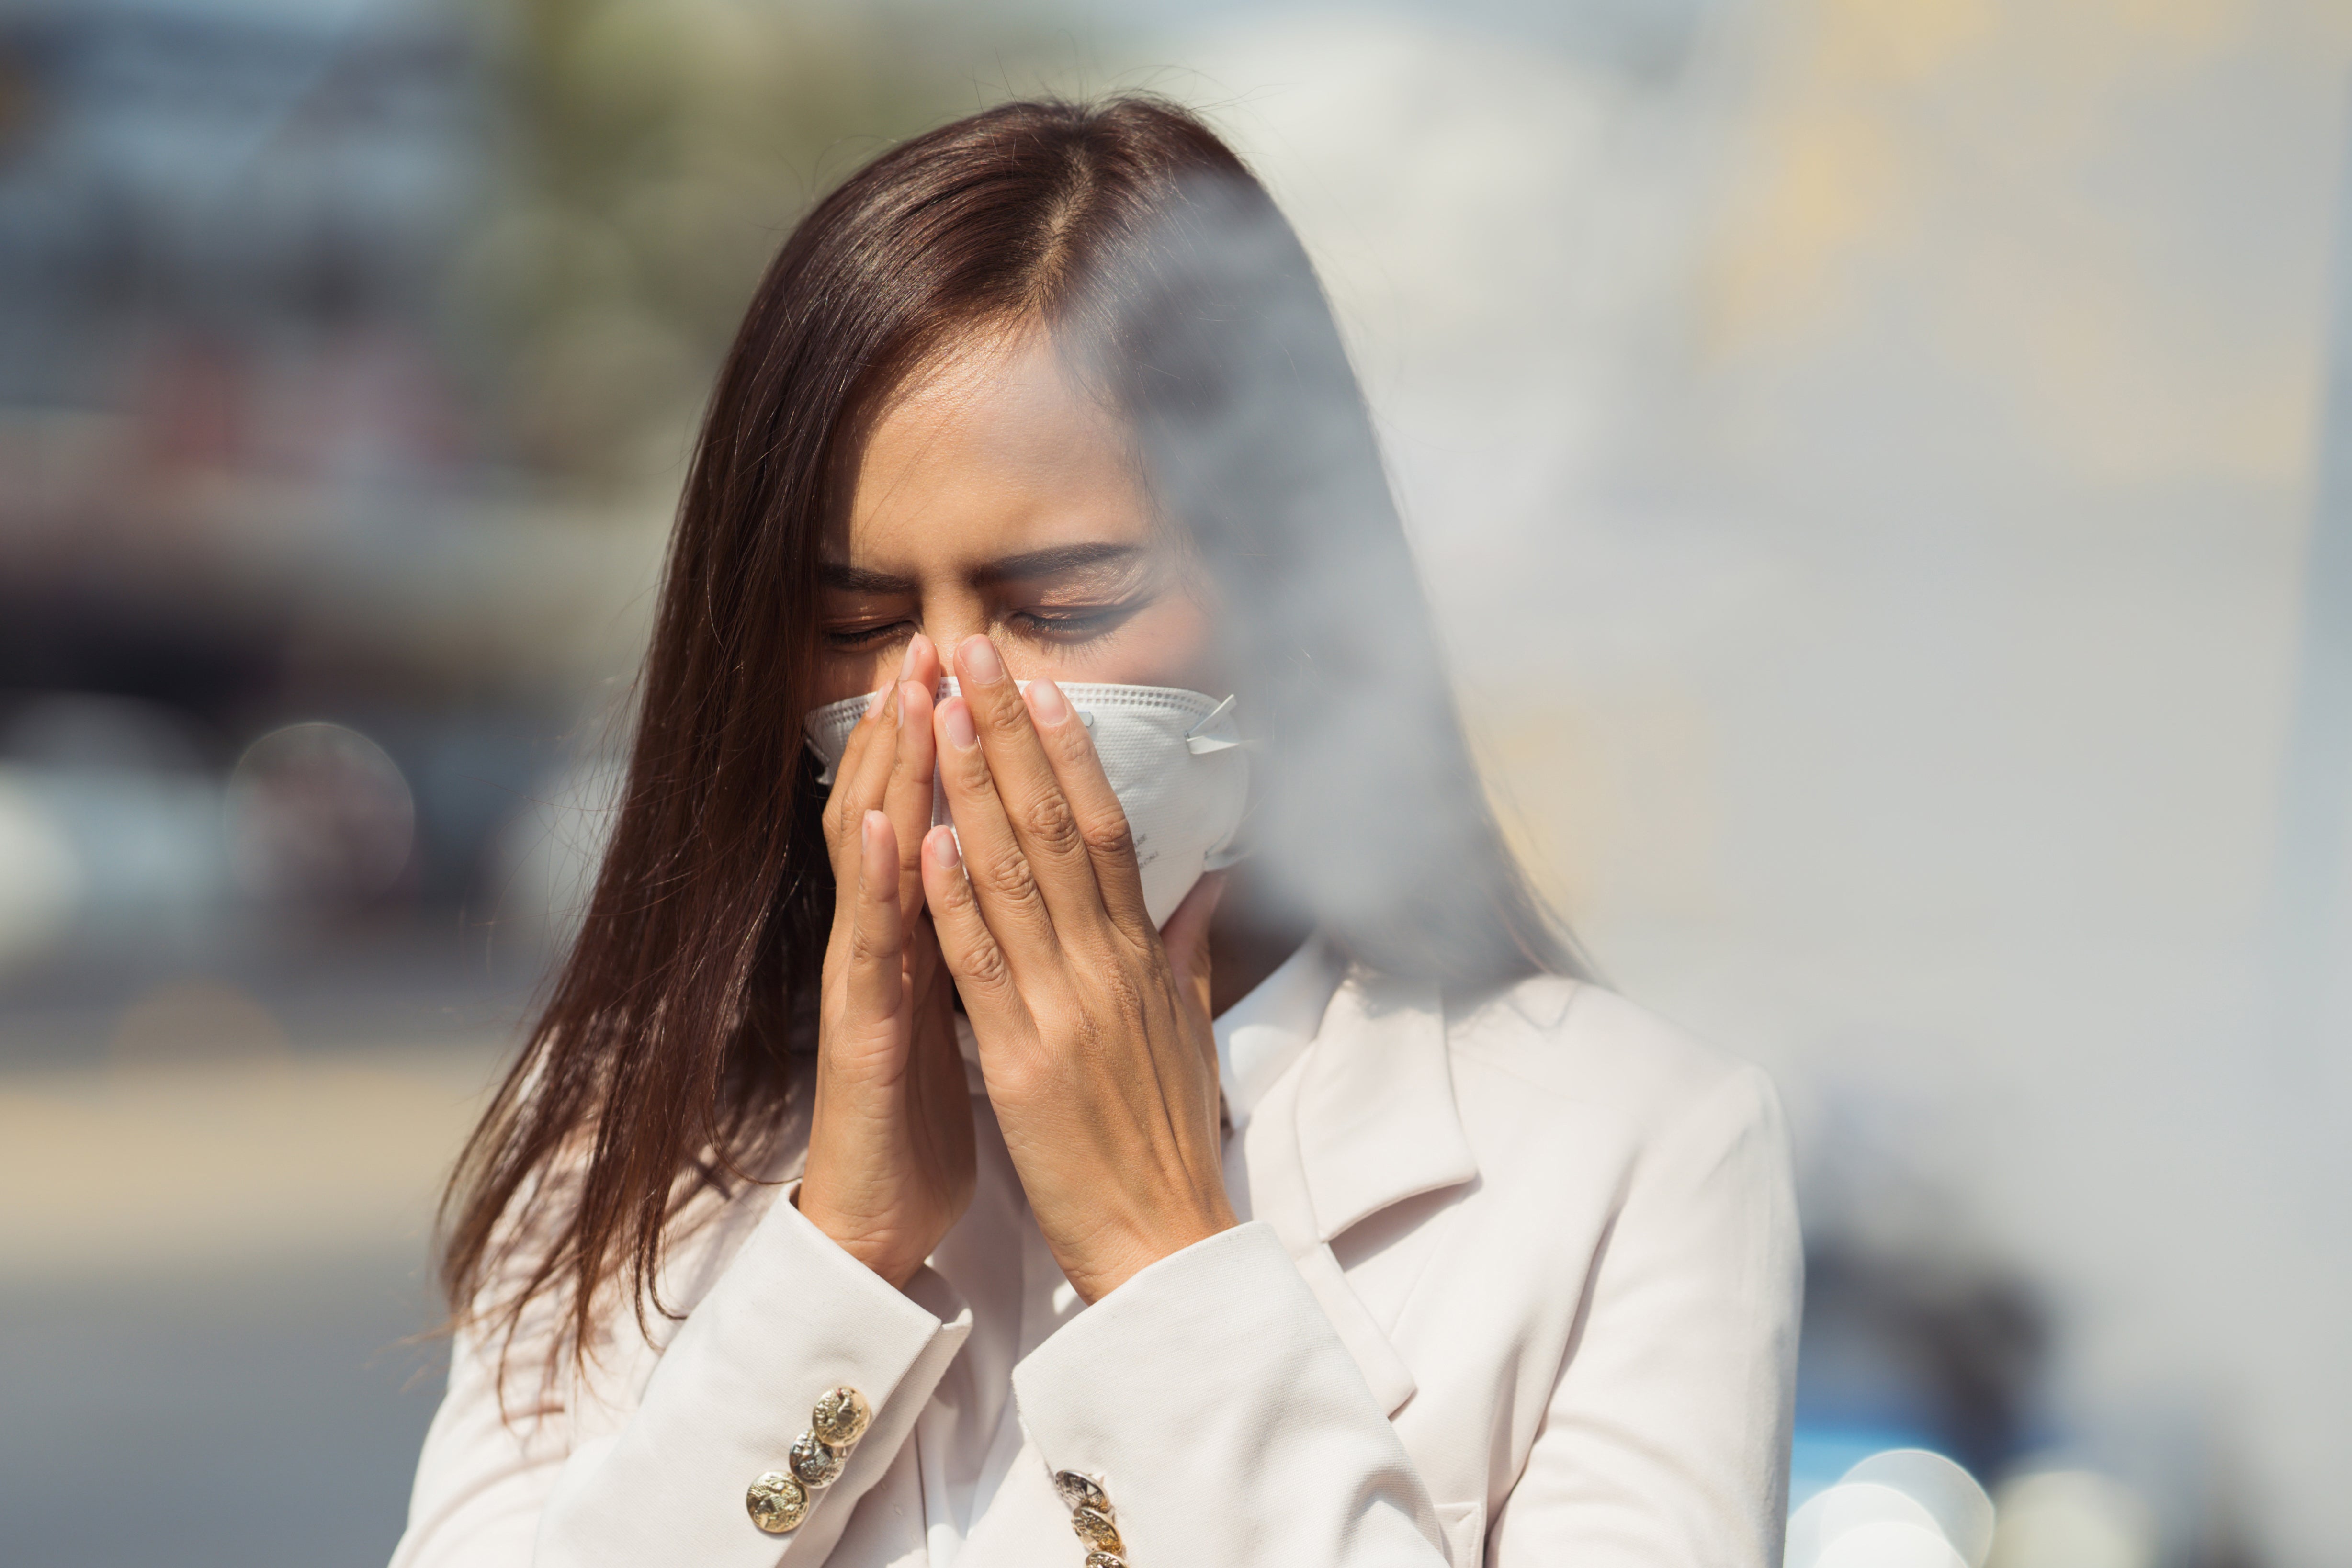 Vrouw met mondkapje op loopt door rook heen. Luchtvervuiling raakt vaker Nederlanders met een migratieachtergrond.